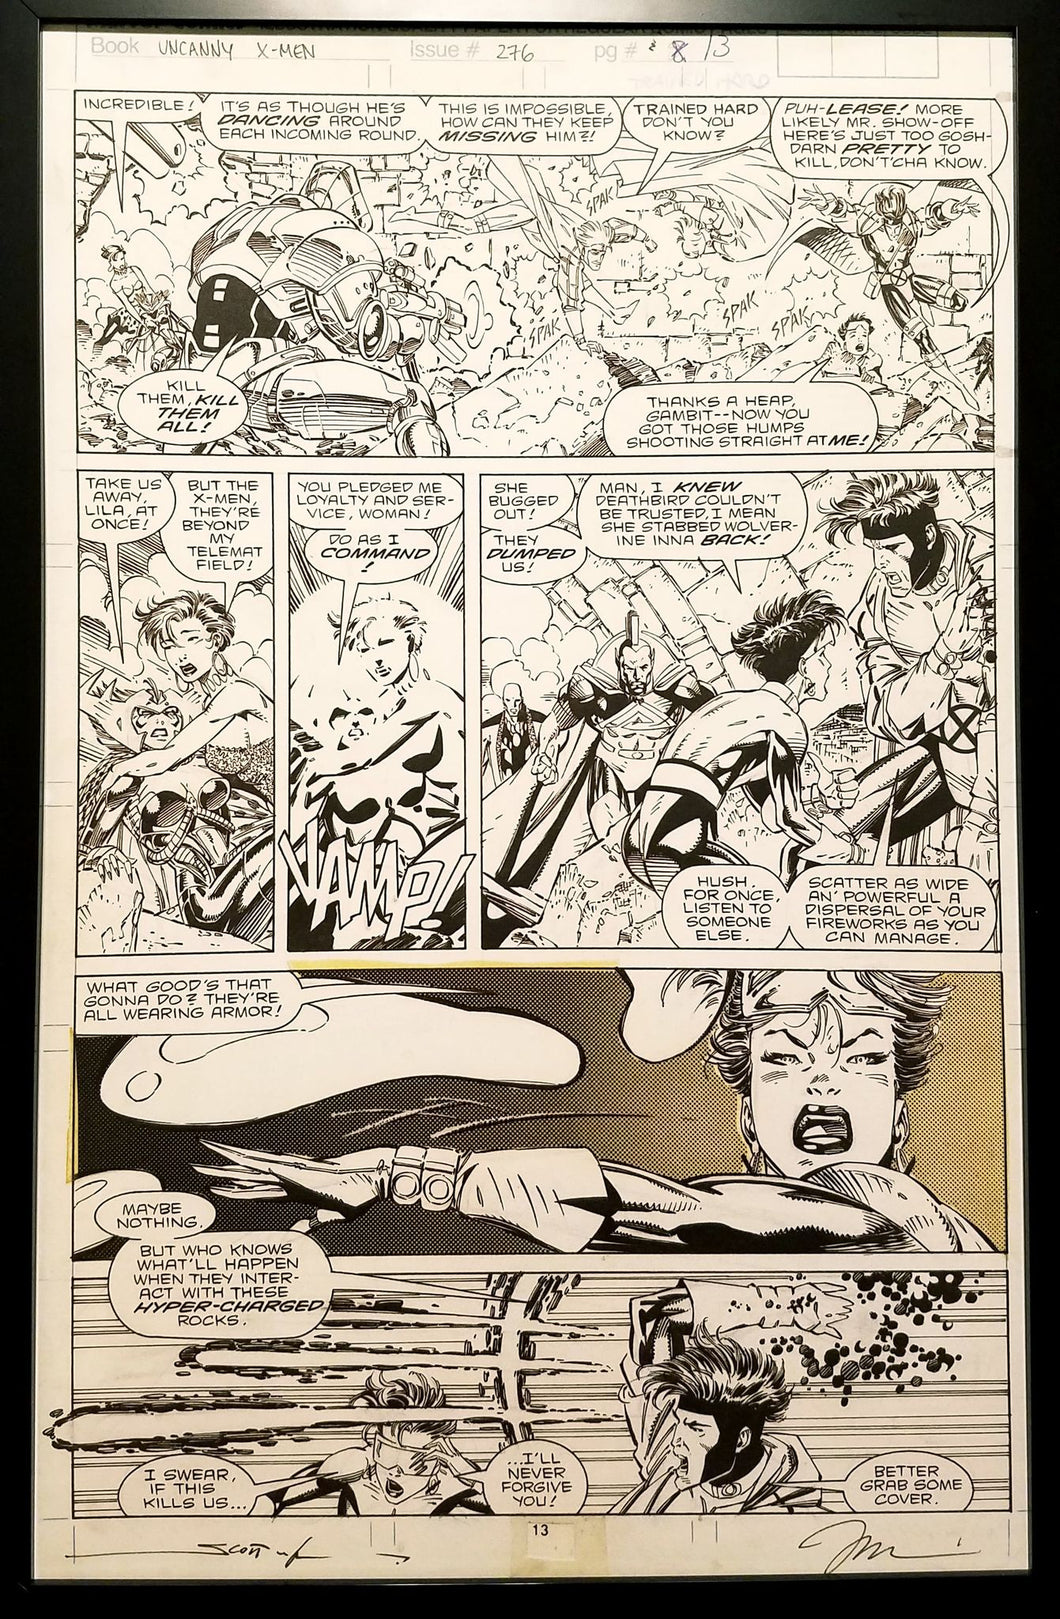 X-Men #276 pg. 13 Jubilee Jim Lee 11x17 FRAMED Original Art Poster Marvel Comics